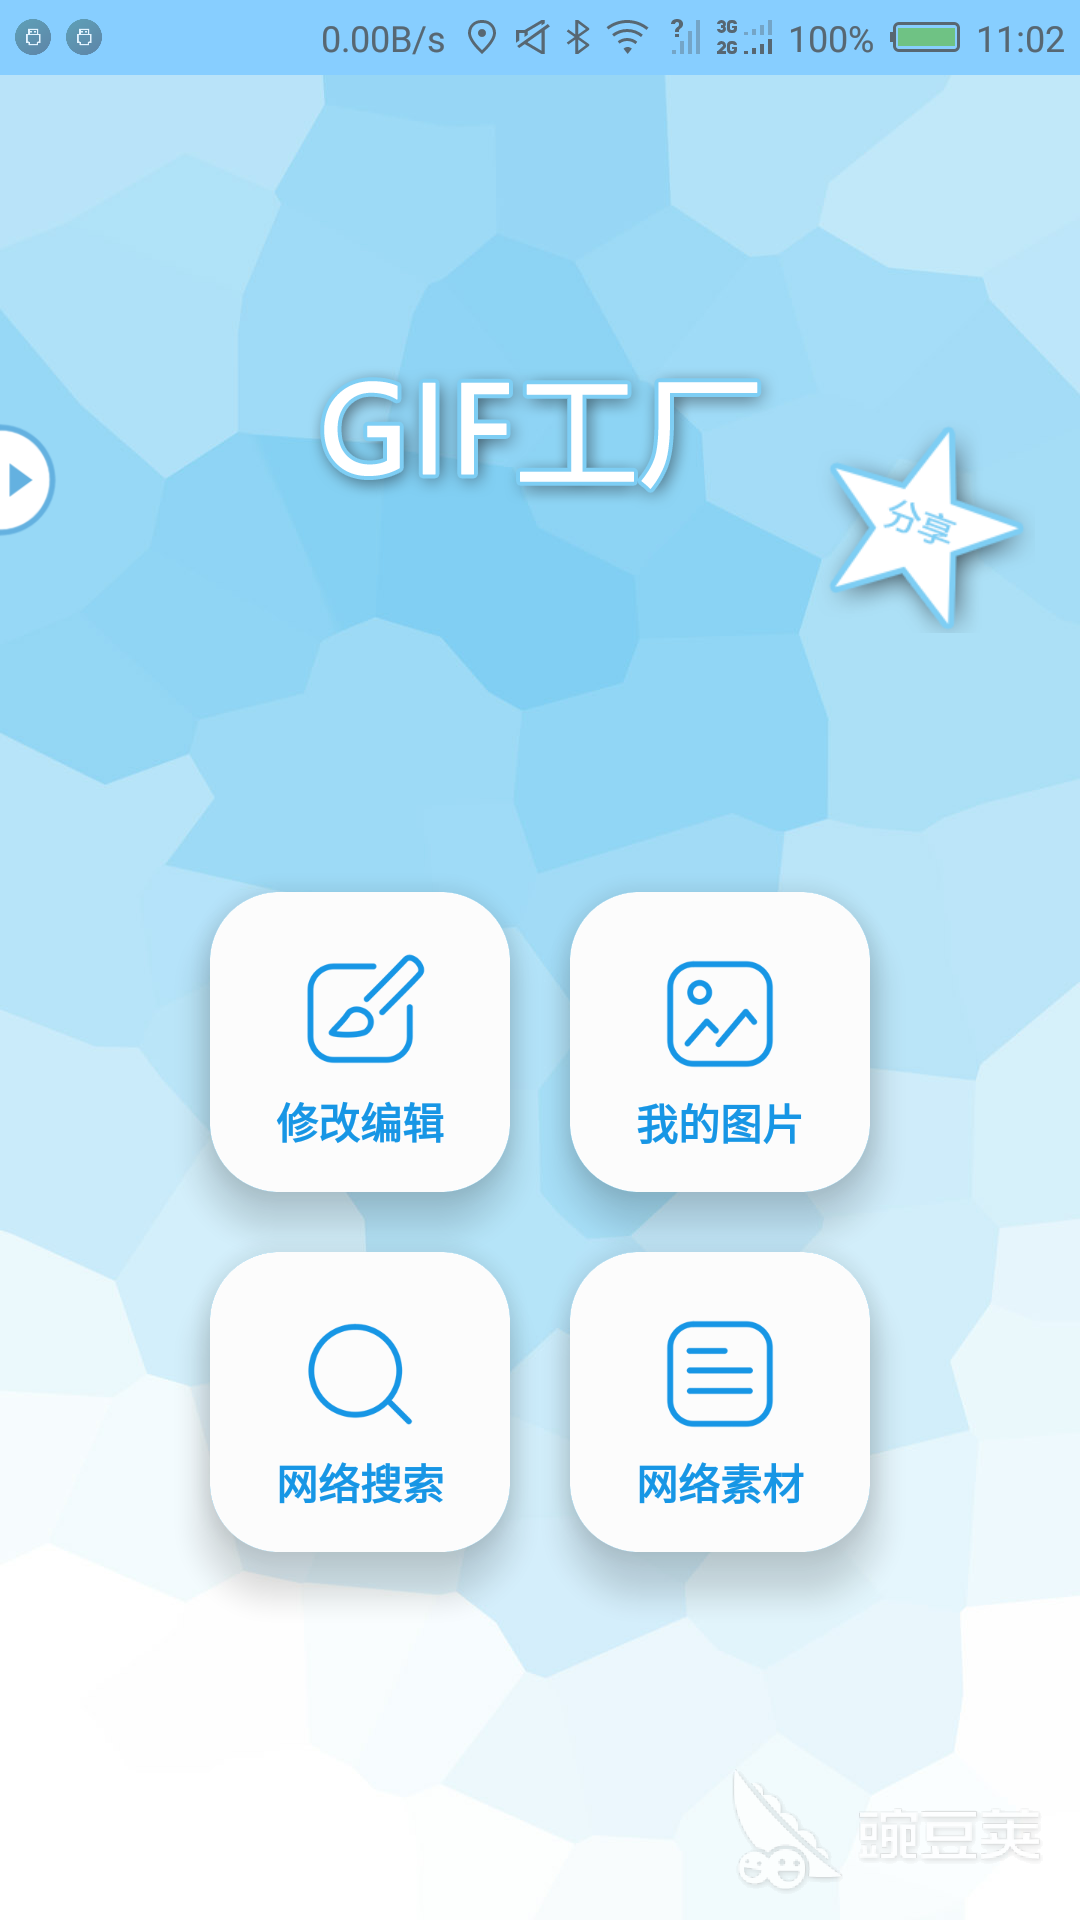 好用的gif制作软件下载 模板多的gif制作软件推荐